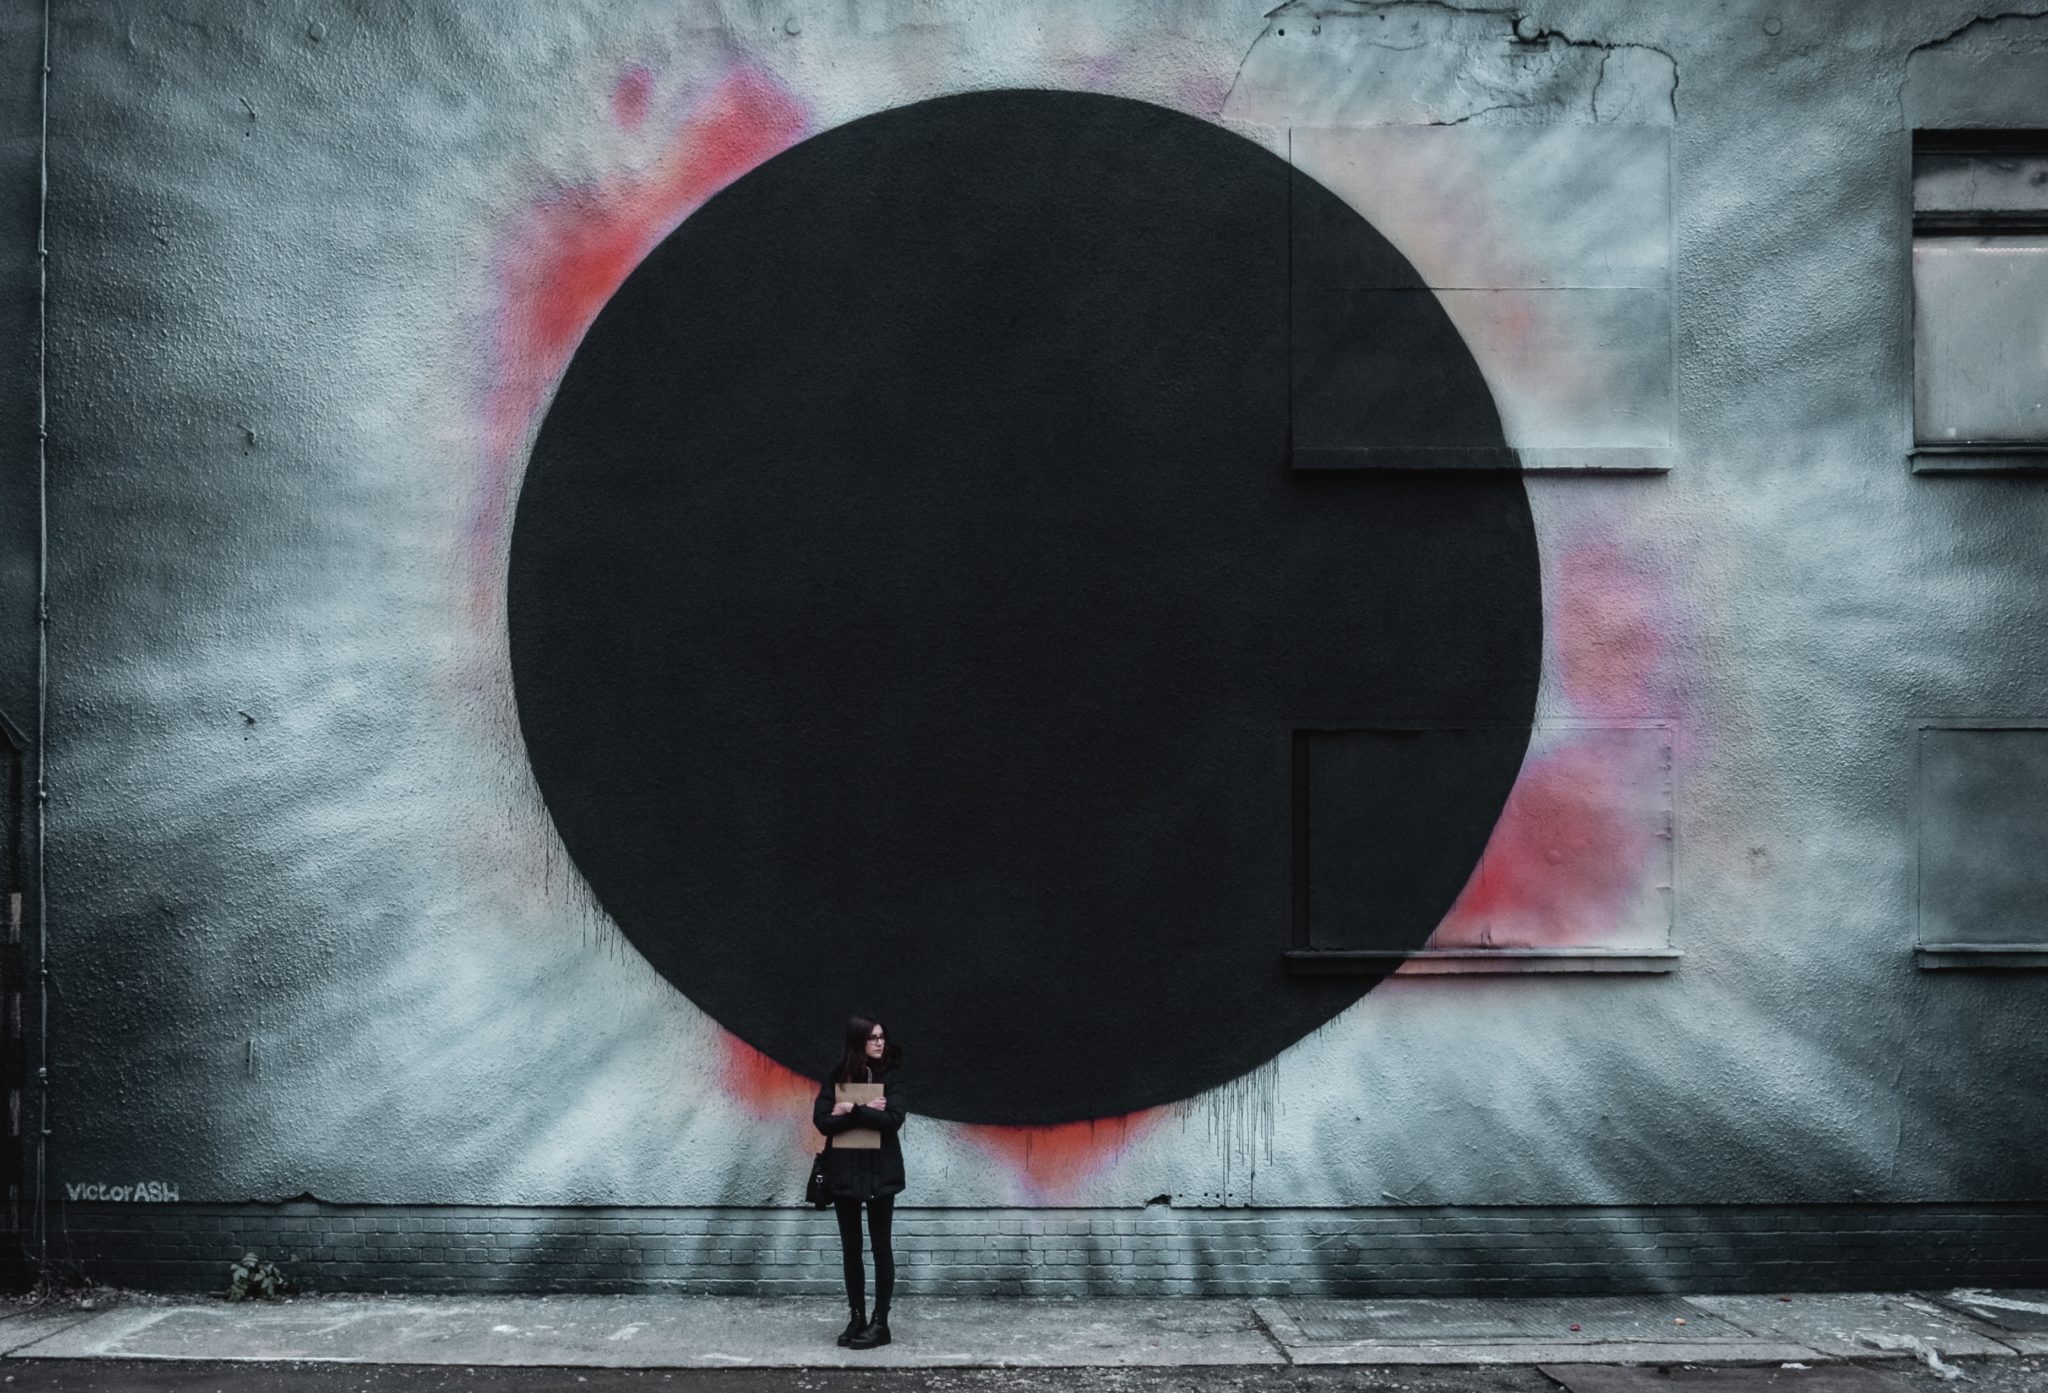 Black hole mural symbolizing big data